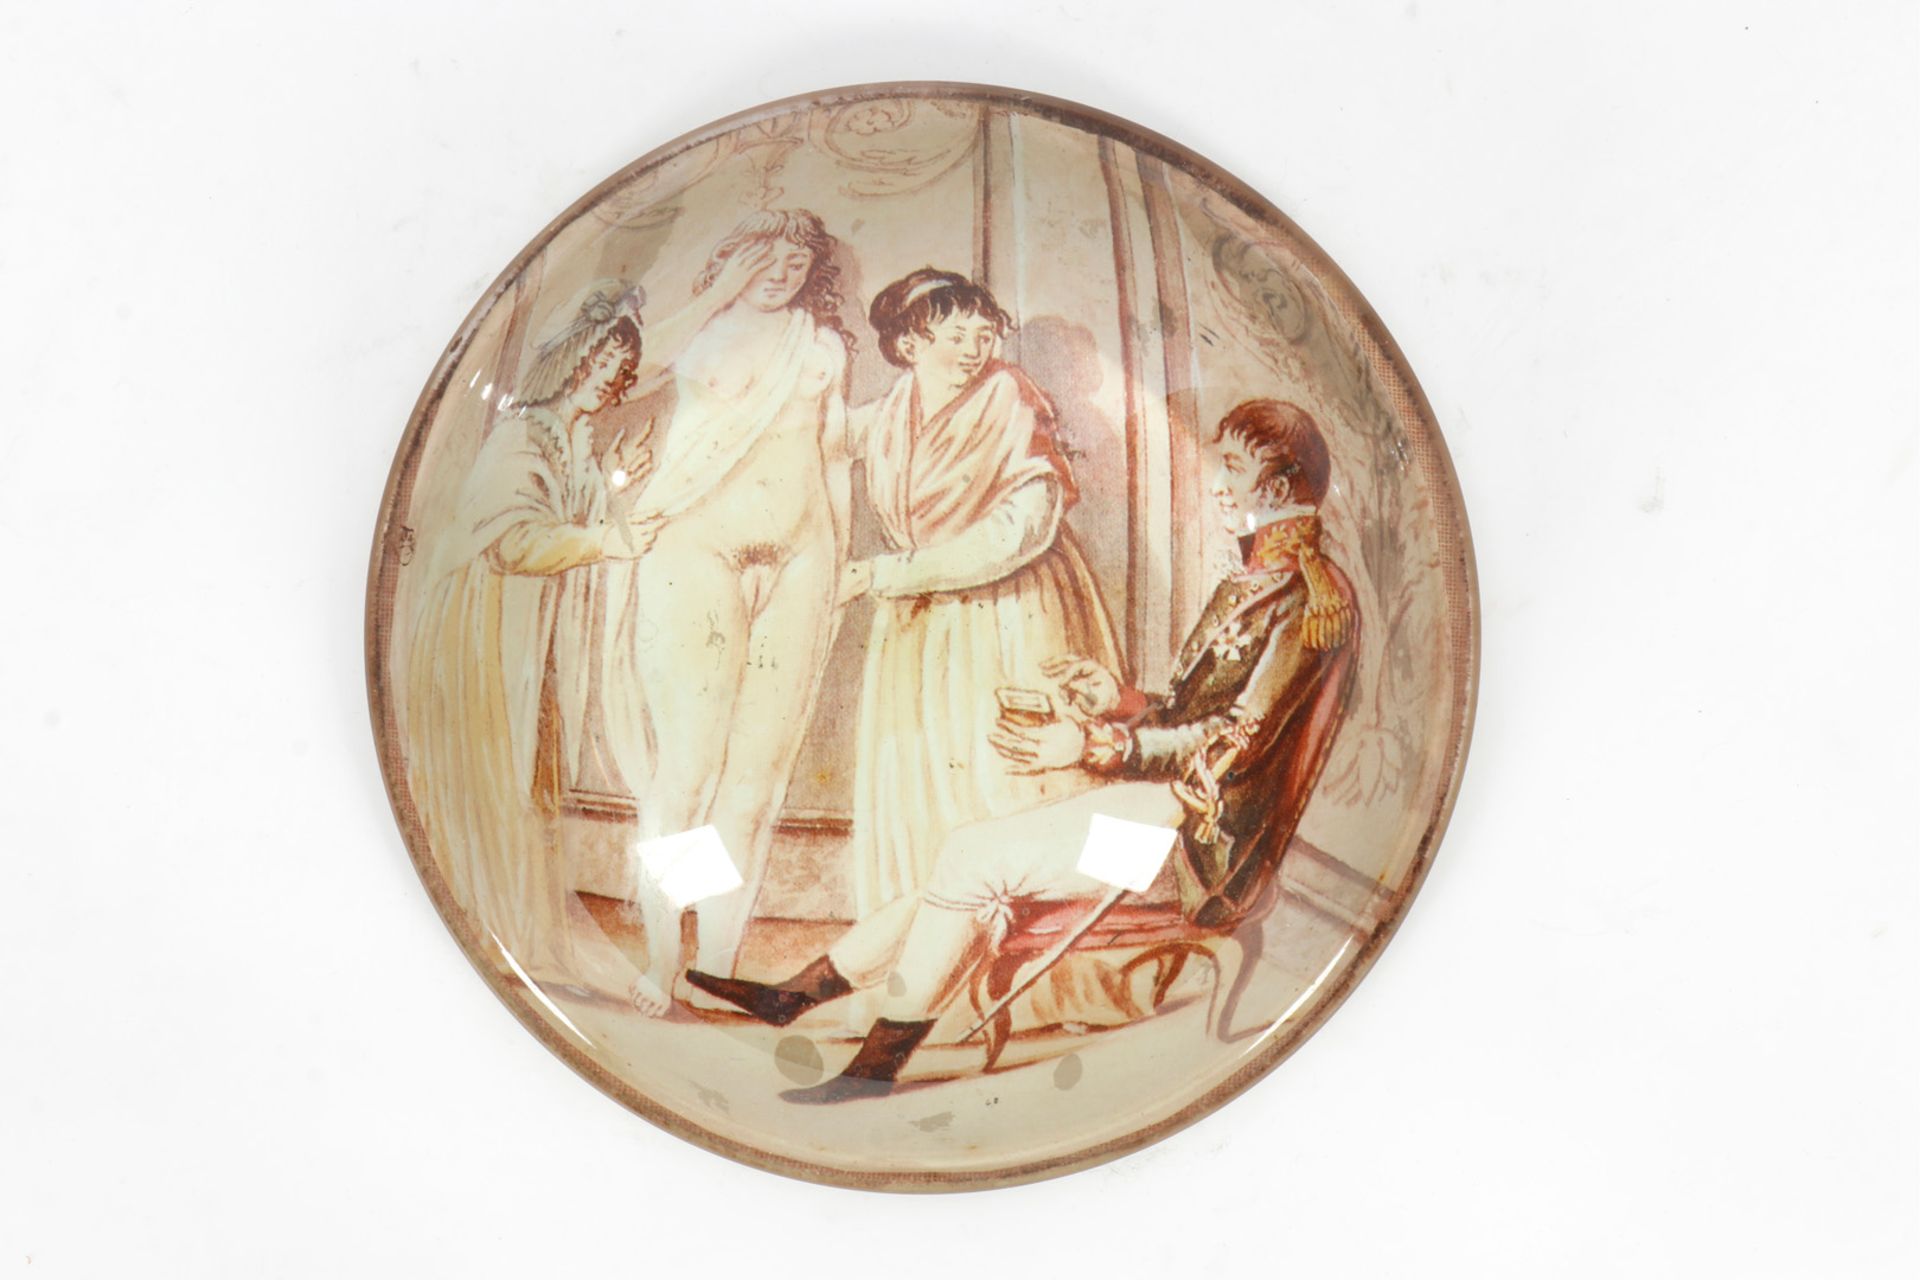 Halbglas als Briefbeschwerer, mit erotischem Motiv, Durchmesser 15